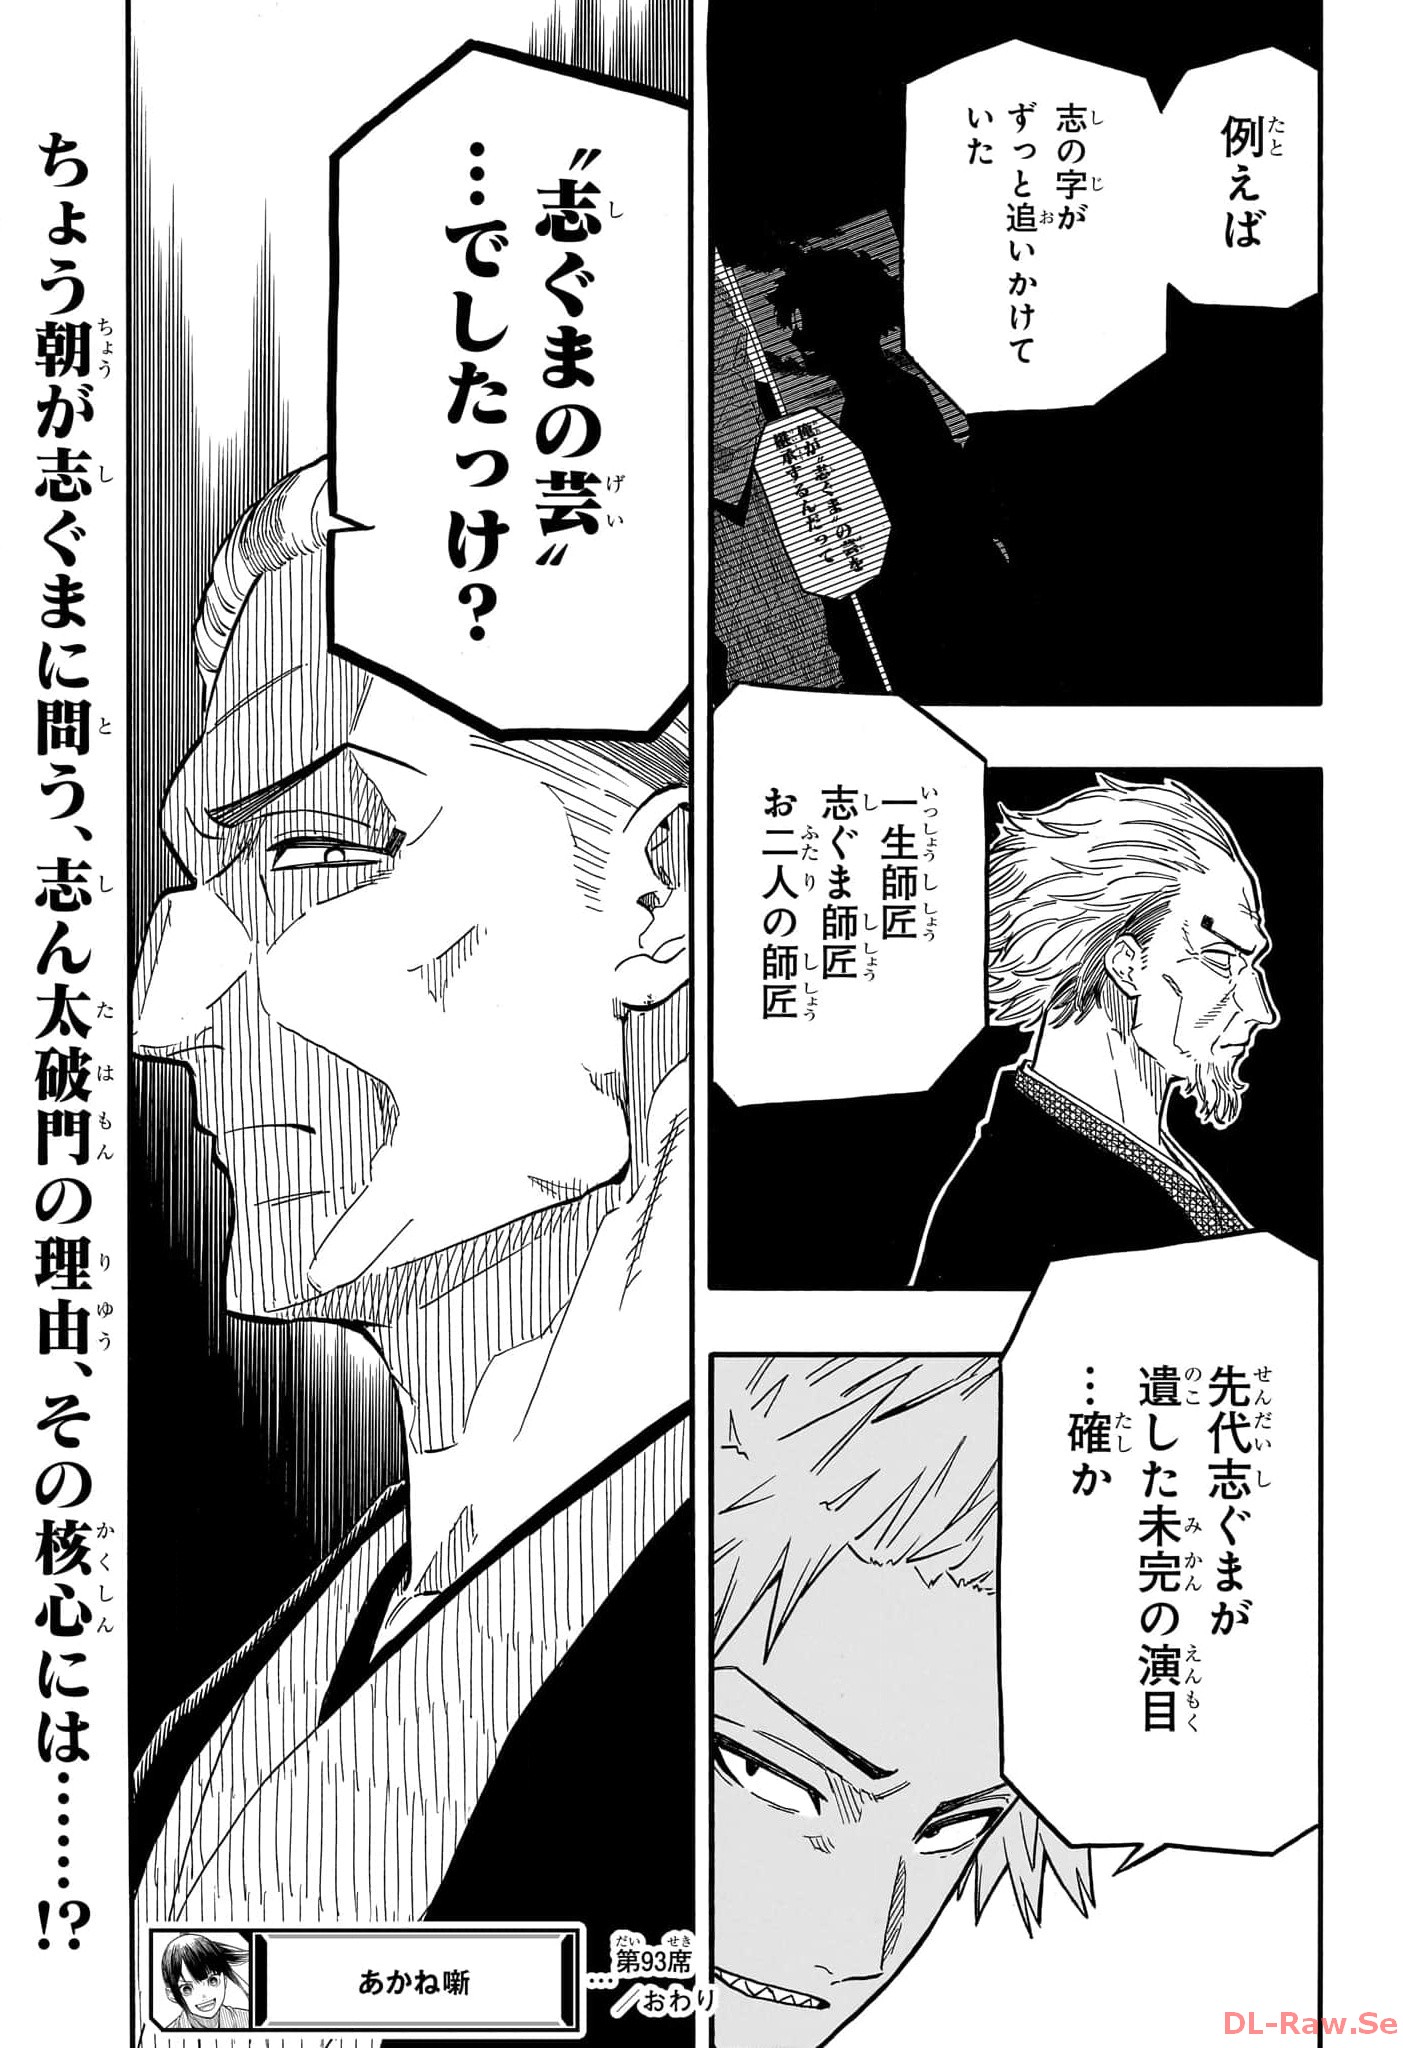 Akane-Banashi - Chapter 93 - Page 19